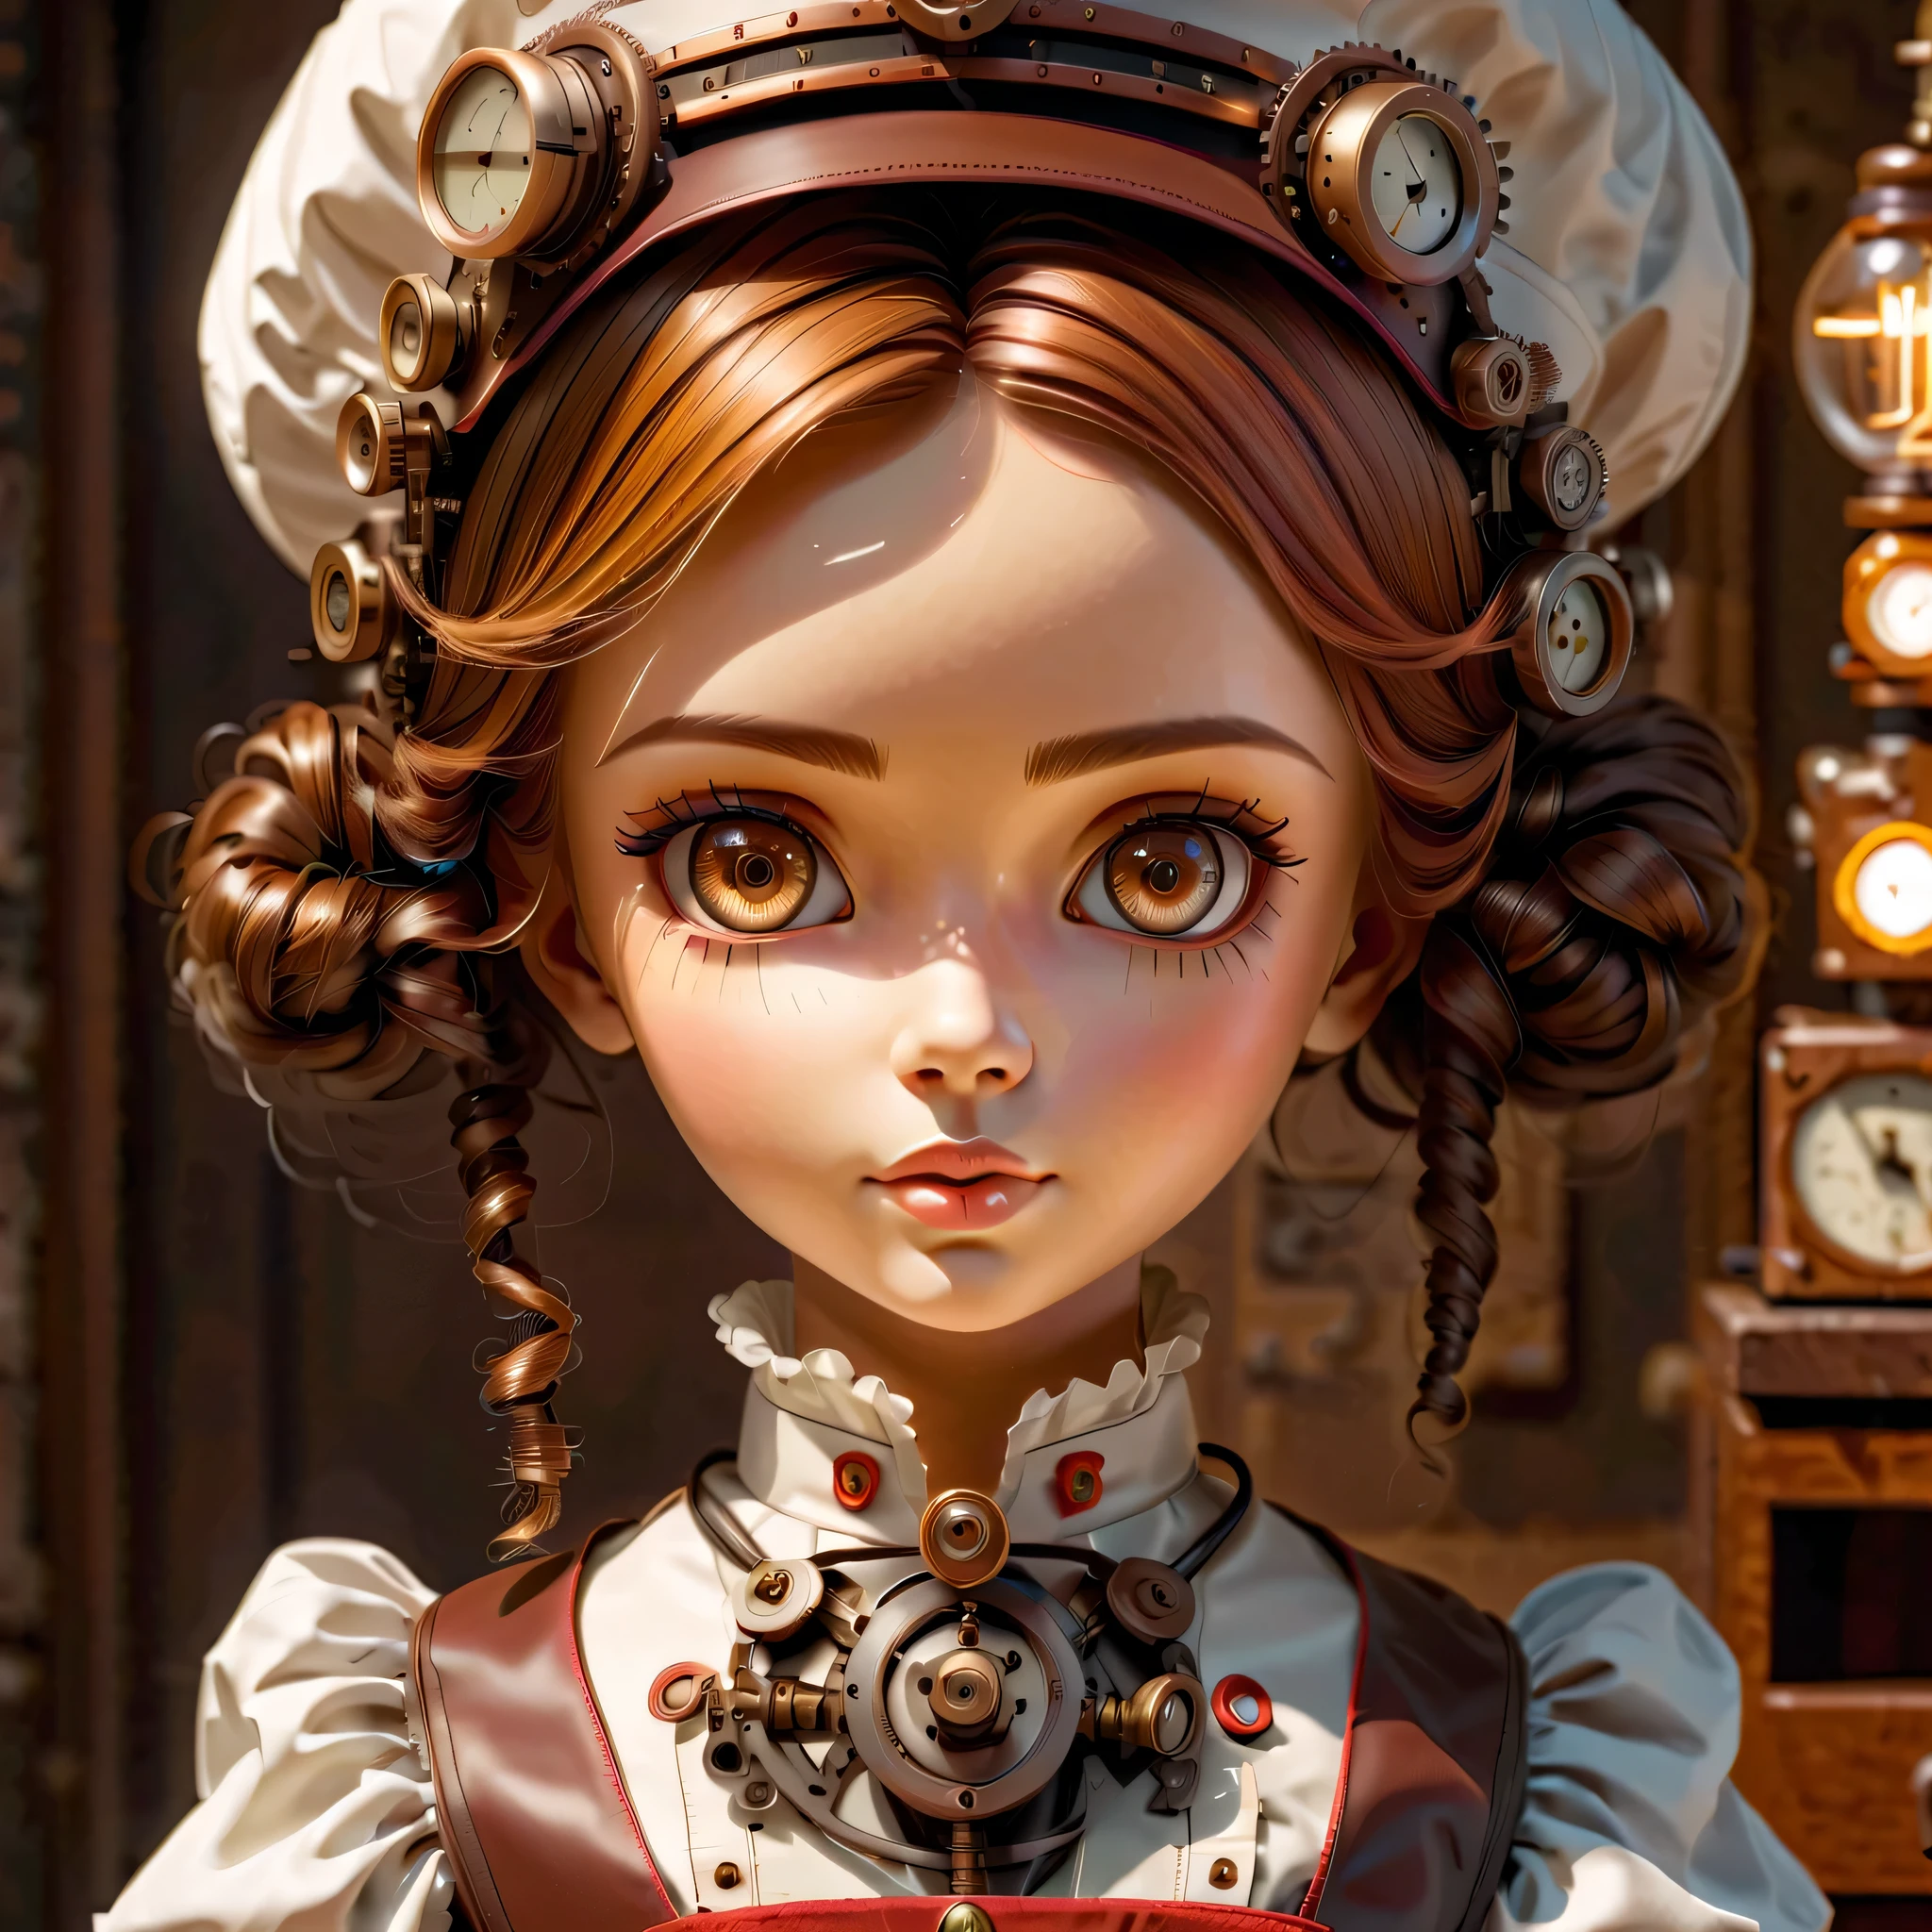 механизм:гуманоид:Медсестра:16th century European Медсестра uniform,лицо куклы:идеальное лицо:большие карие глаза,ресница,спрятать провода для волос,она сделана из машин,Элемент стимпанка,механический engineering,механическийly,механический,поп,милый,сложные детали,Очень хорошо,высокое разрешение,высокое качество,最высокое качество,четко,Будь понятен,красивый свет и тень,Три измерения,Очаровательный внешний вид,сложная конфигурация,механизм,динамичный,занятый,Много работать,Выражение, которое вызывает желание поддержать,Медицинское оборудование,полка для медицинских принадлежностей,флакон,предъявить доказательства того, что это машина,свет из окна,лист дизайна персонажа